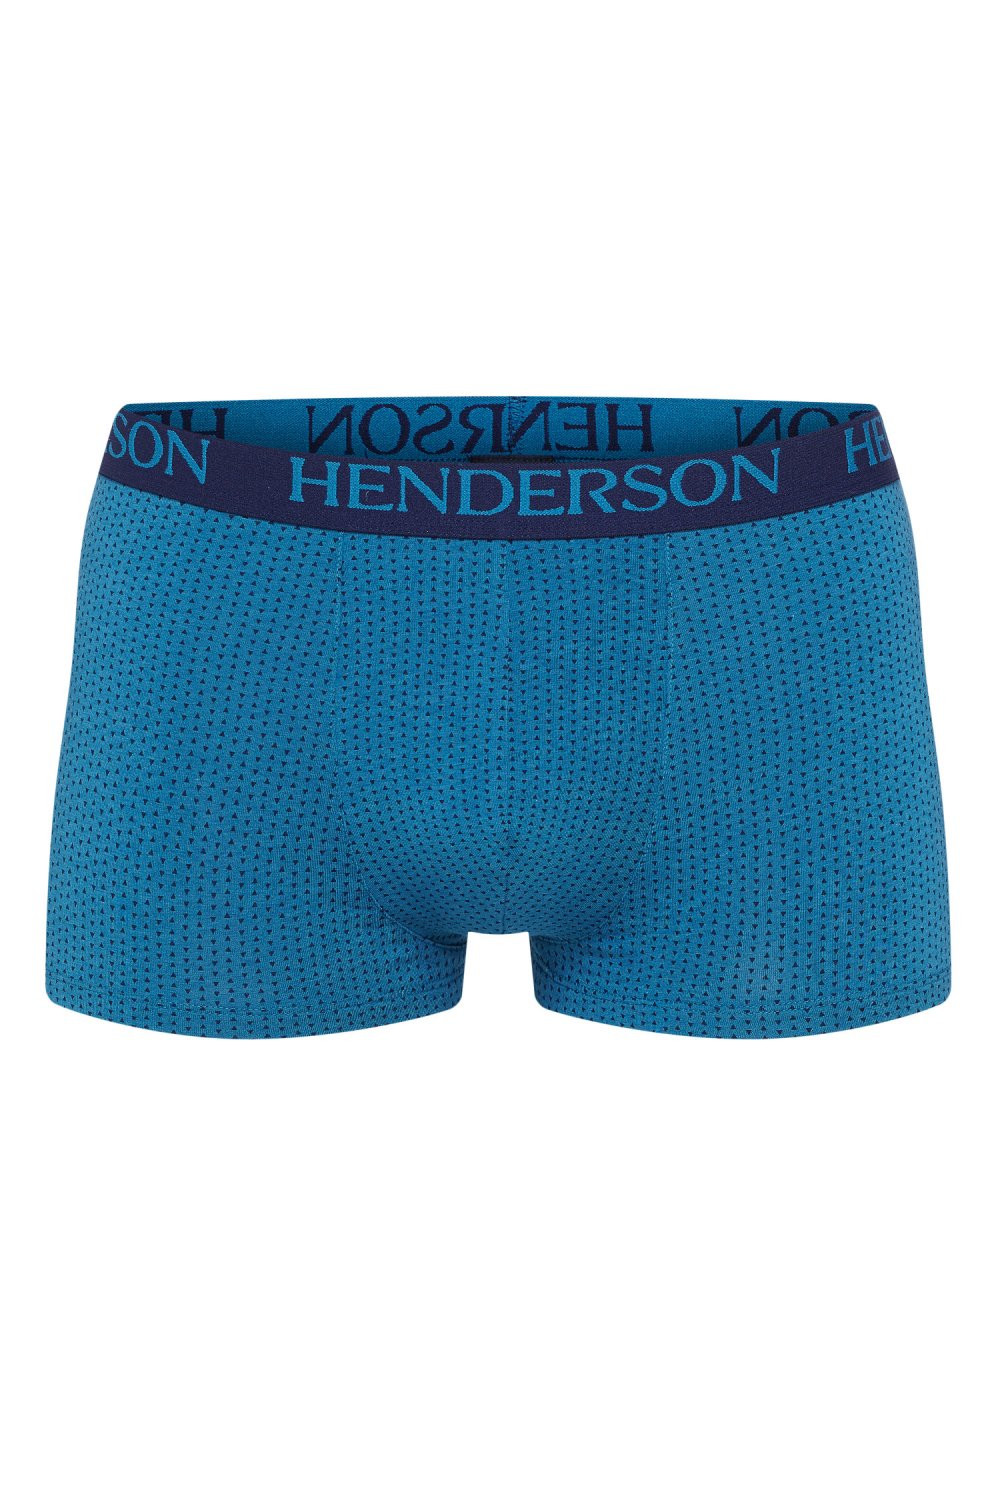 Pánské boxerky model 8447496 tmavě modrá M - Henderson